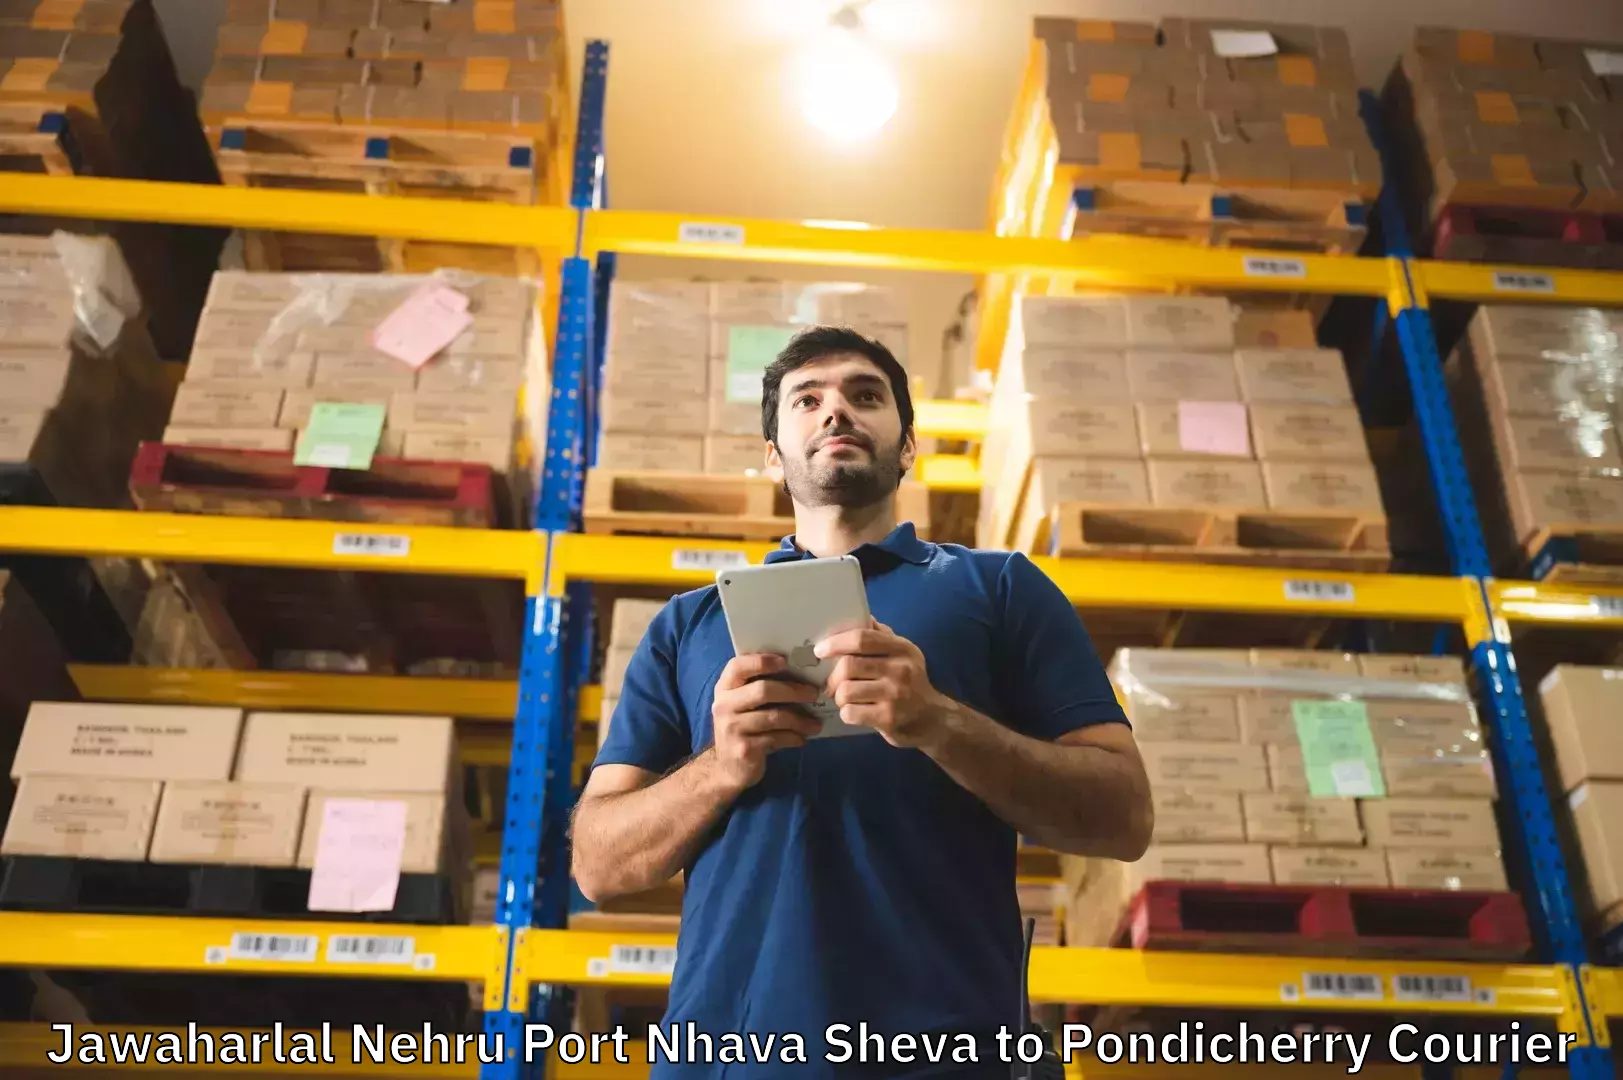 Luggage delivery app Jawaharlal Nehru Port Nhava Sheva to Pondicherry